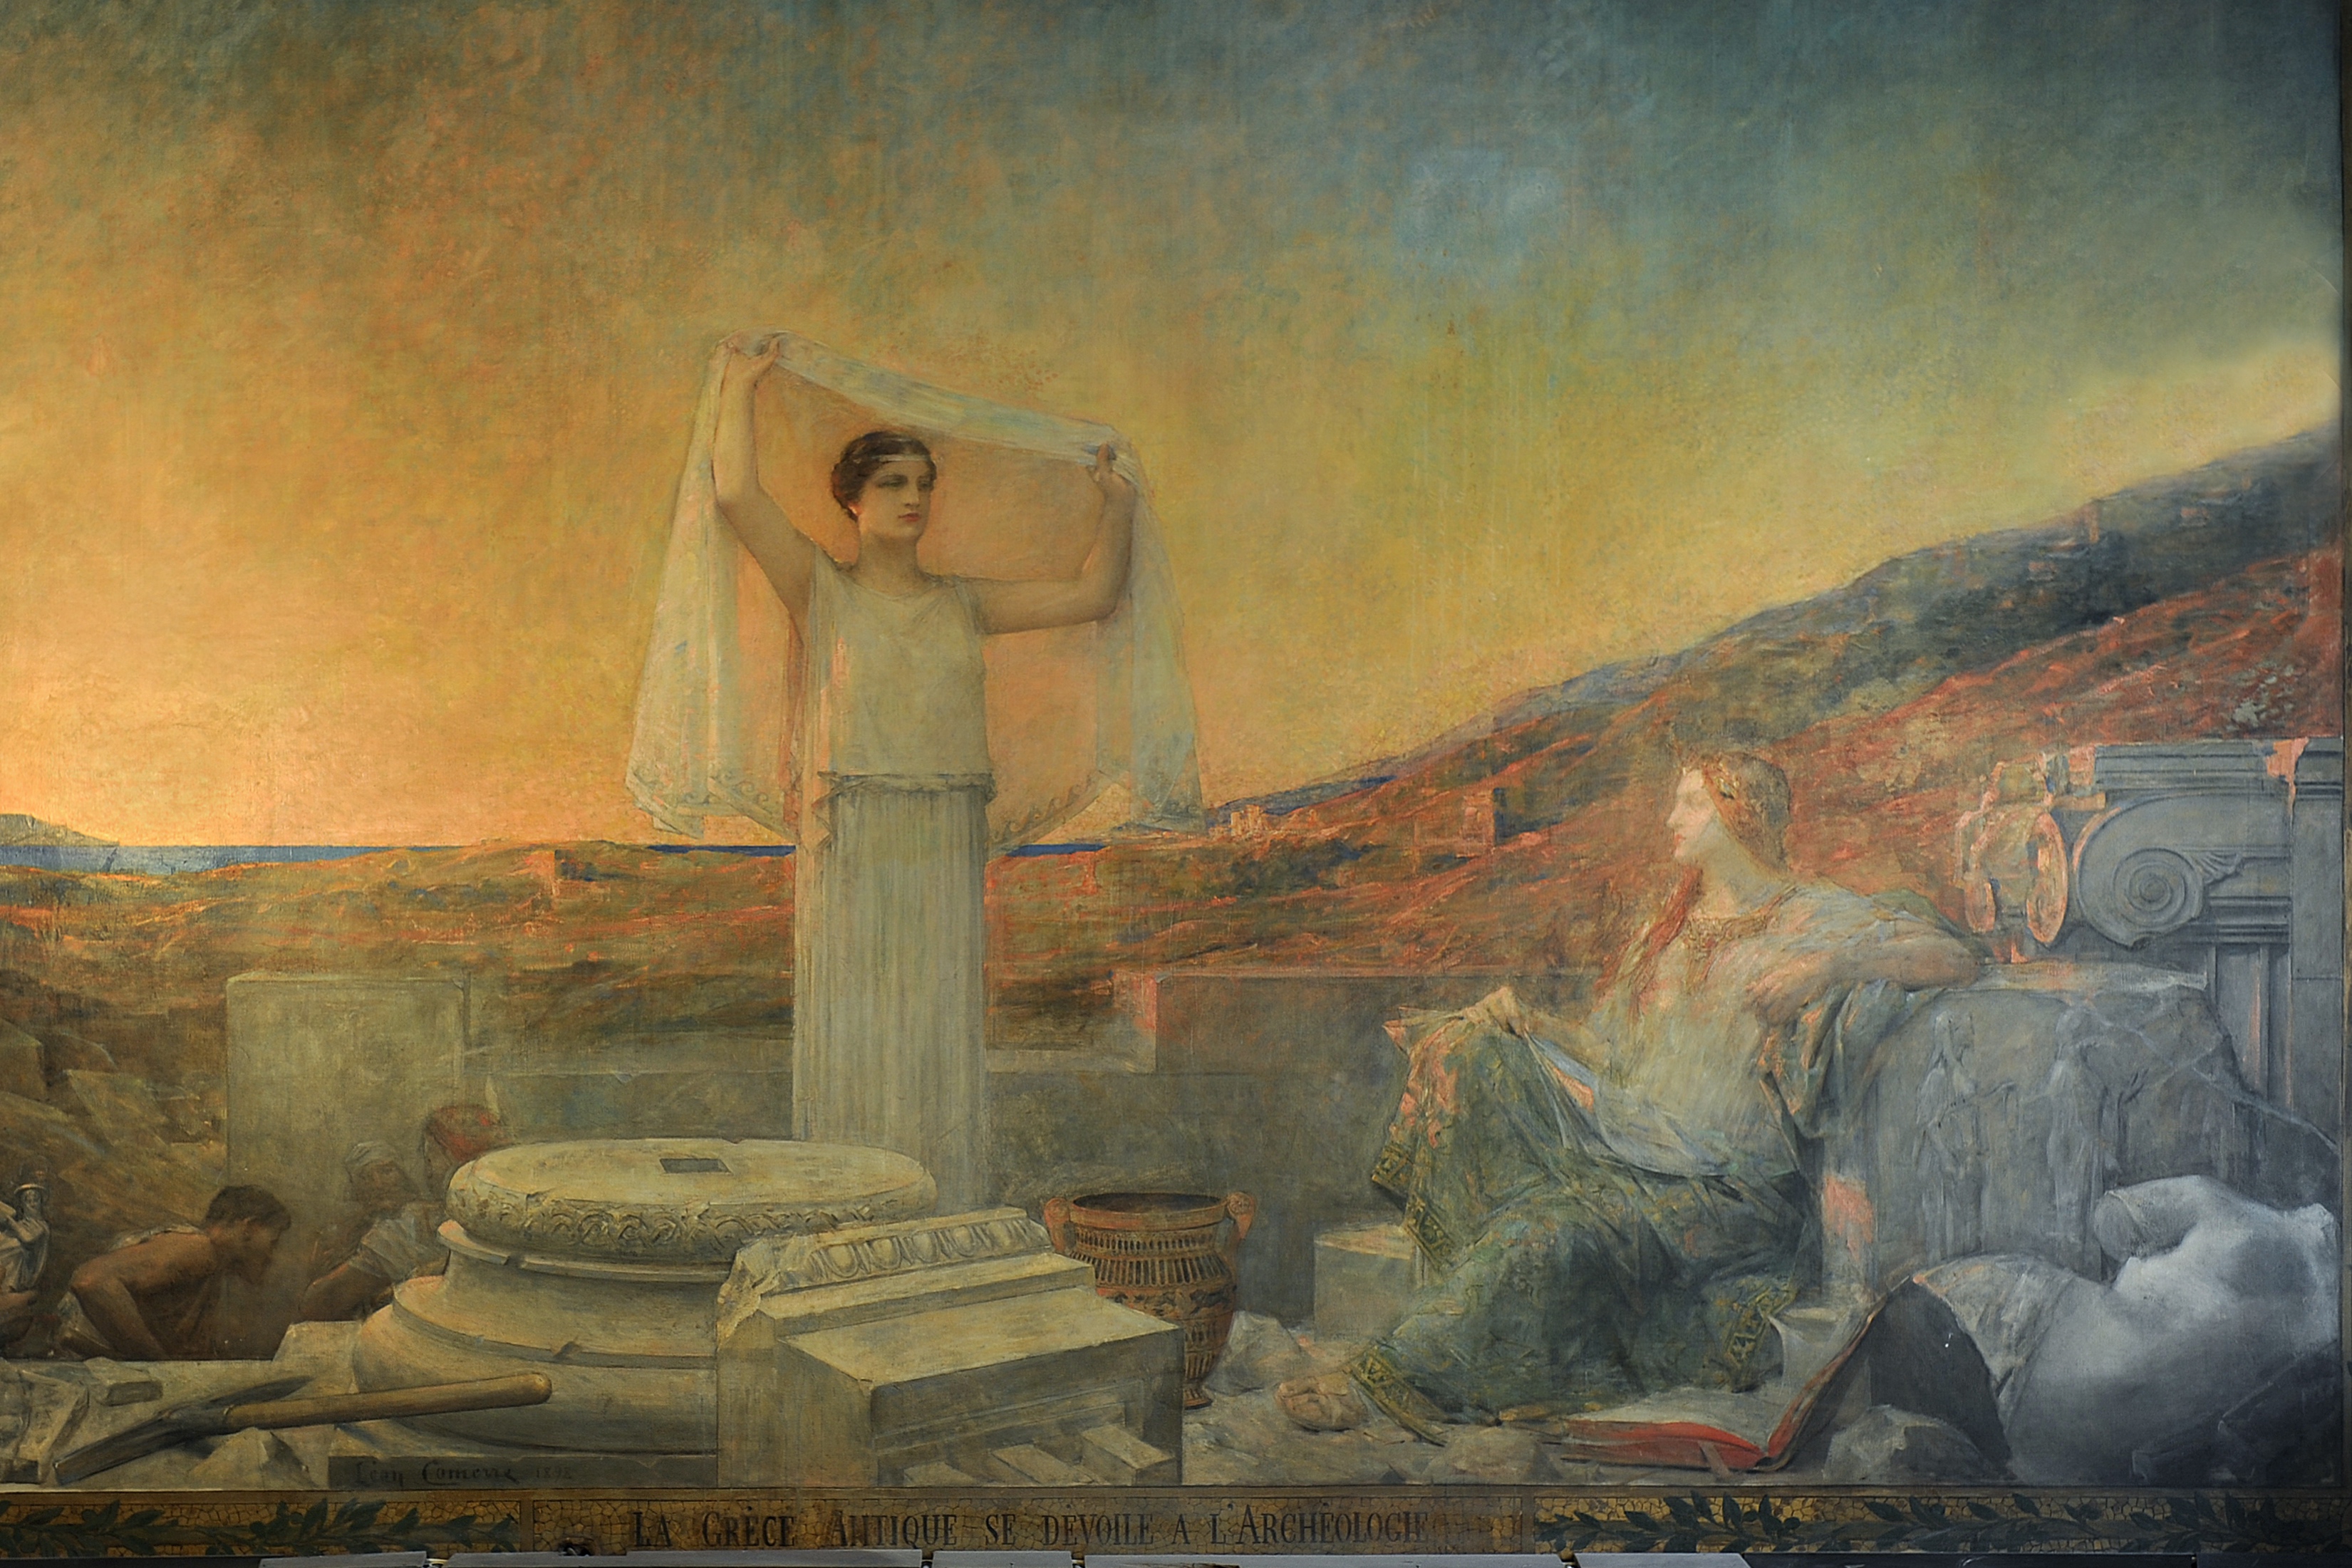 Léon François Comerre, La Grèce antique se dévoile à l’archéologie, 1898